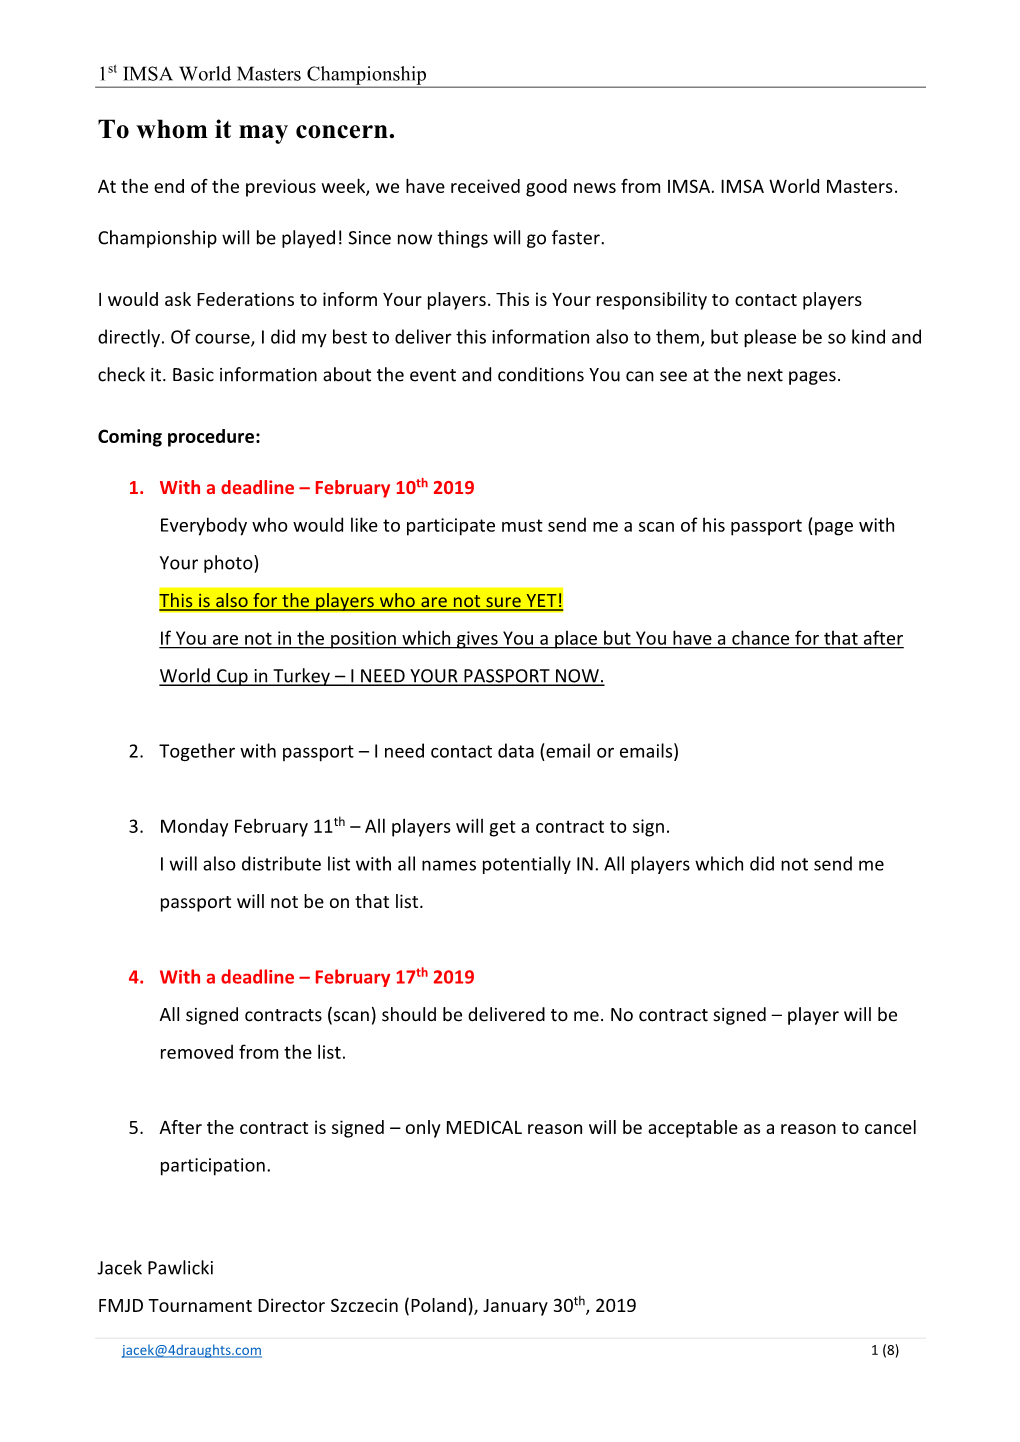 Information About IMSA World Masters Championship